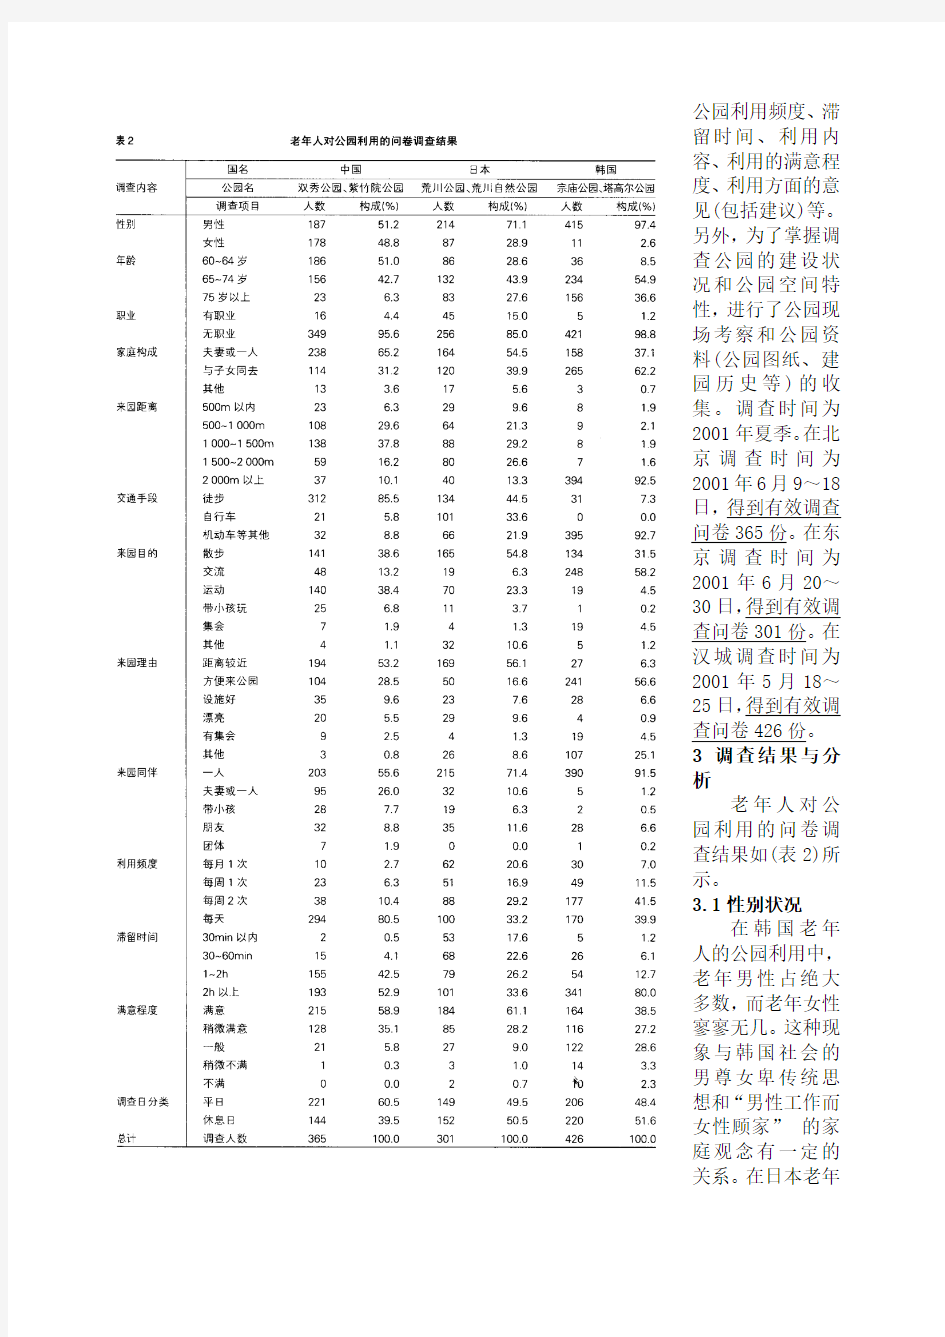 中日韩三国老年人对公园利用的比较